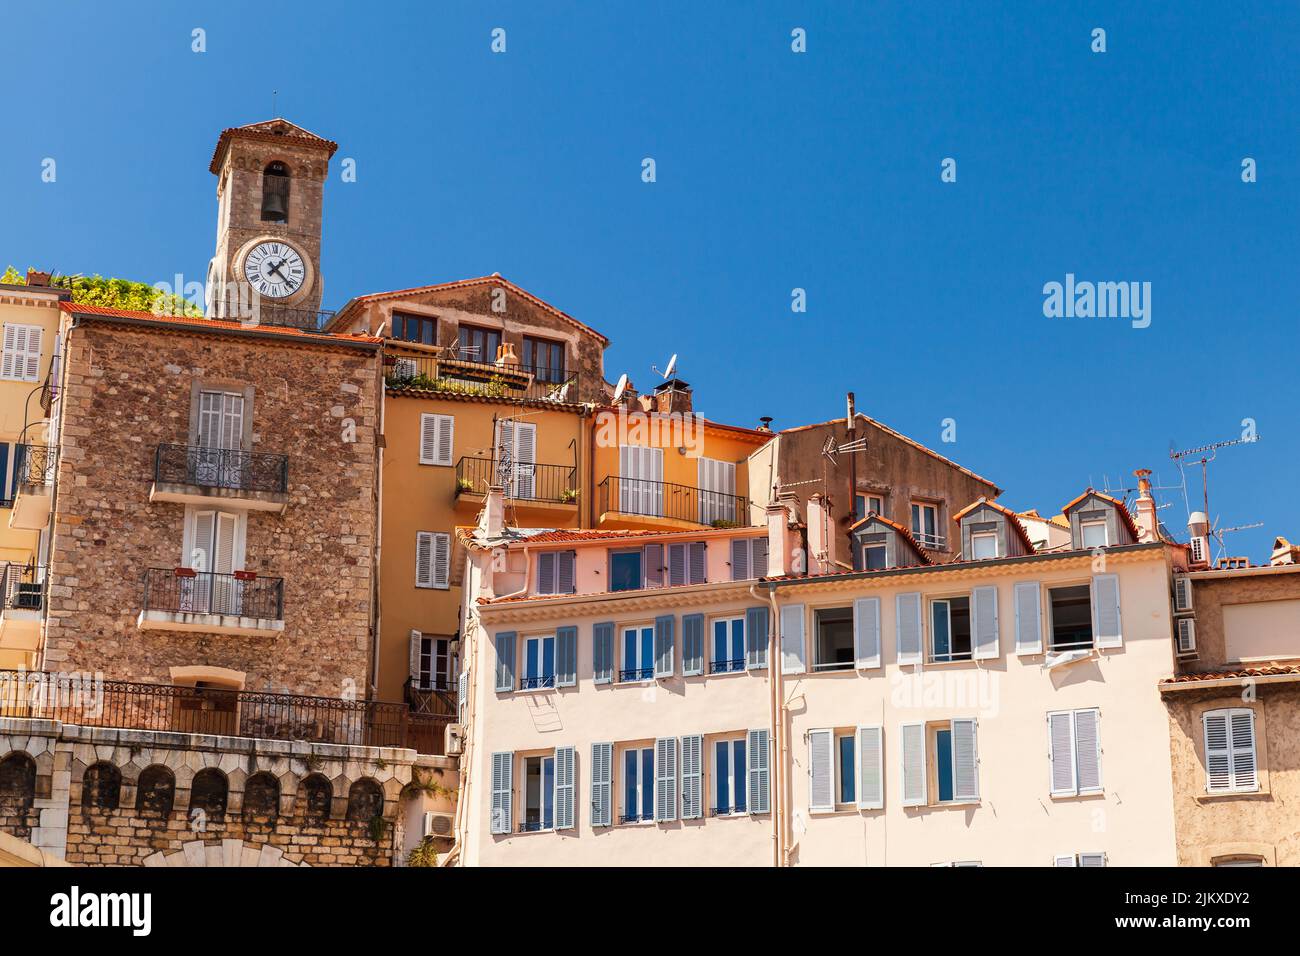 Cannes, Francia. Vista de la calle con casas residenciales antiguas y el campanario de la iglesia de Nuestra Señora de la Esperanza en un fondo Foto de stock